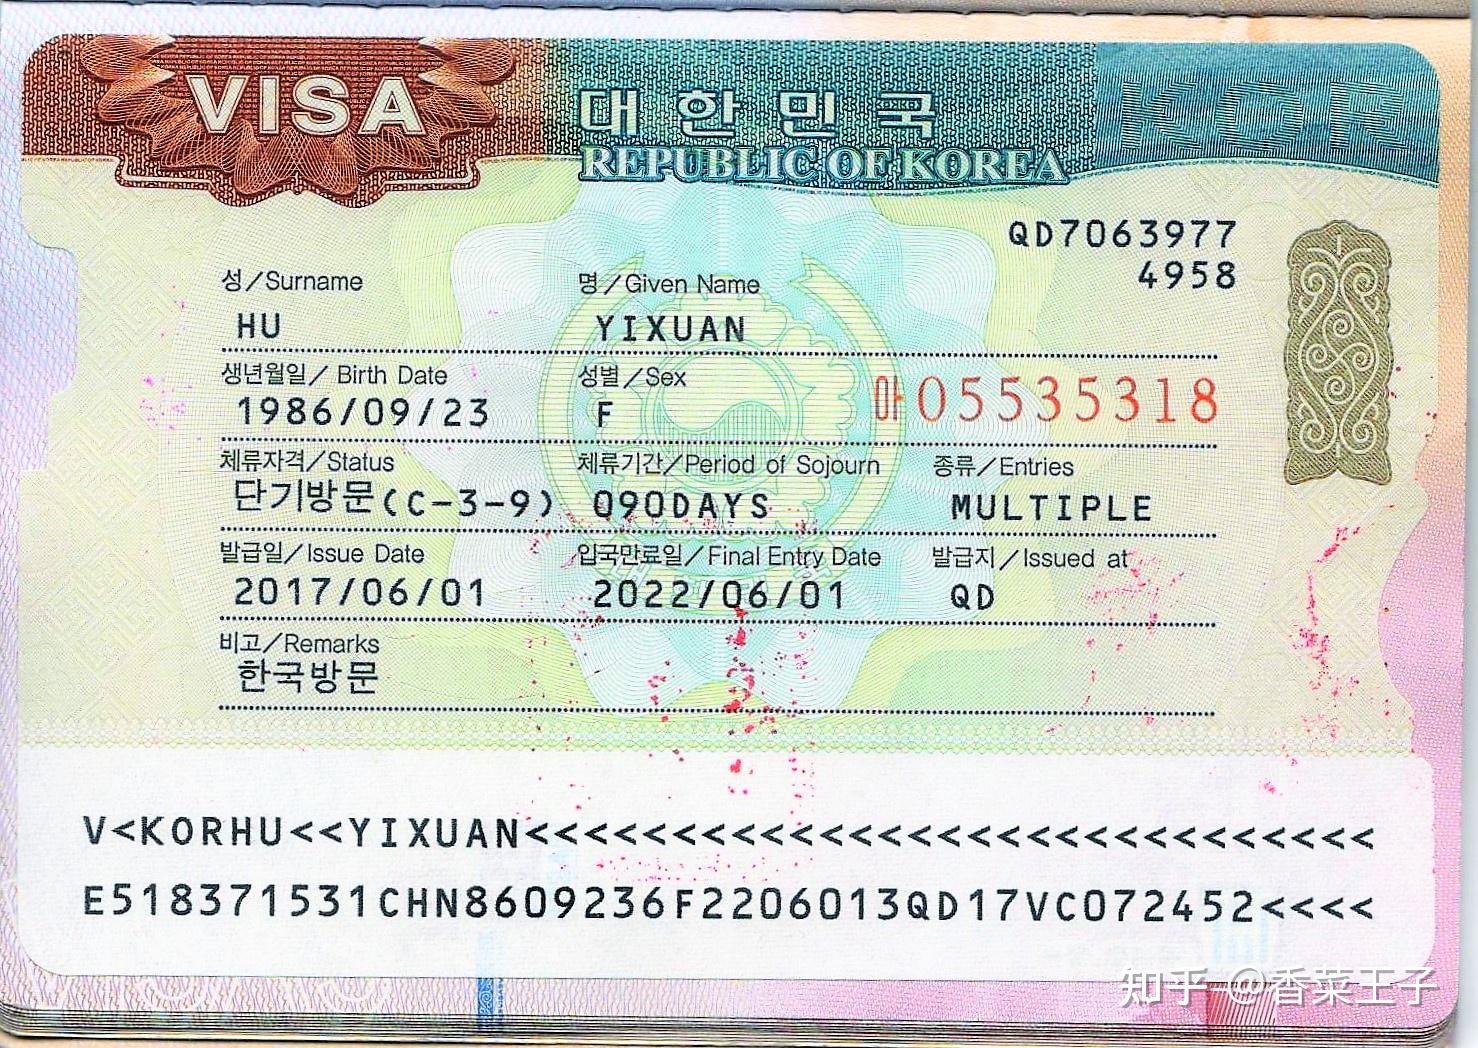 韩国护照含金量，与德国并列全球第二位，可免签入境190个国家@韩通社@韩国移民@李子移民@韩国李子移民@华侨生联考@韩国存款移民 - 知乎